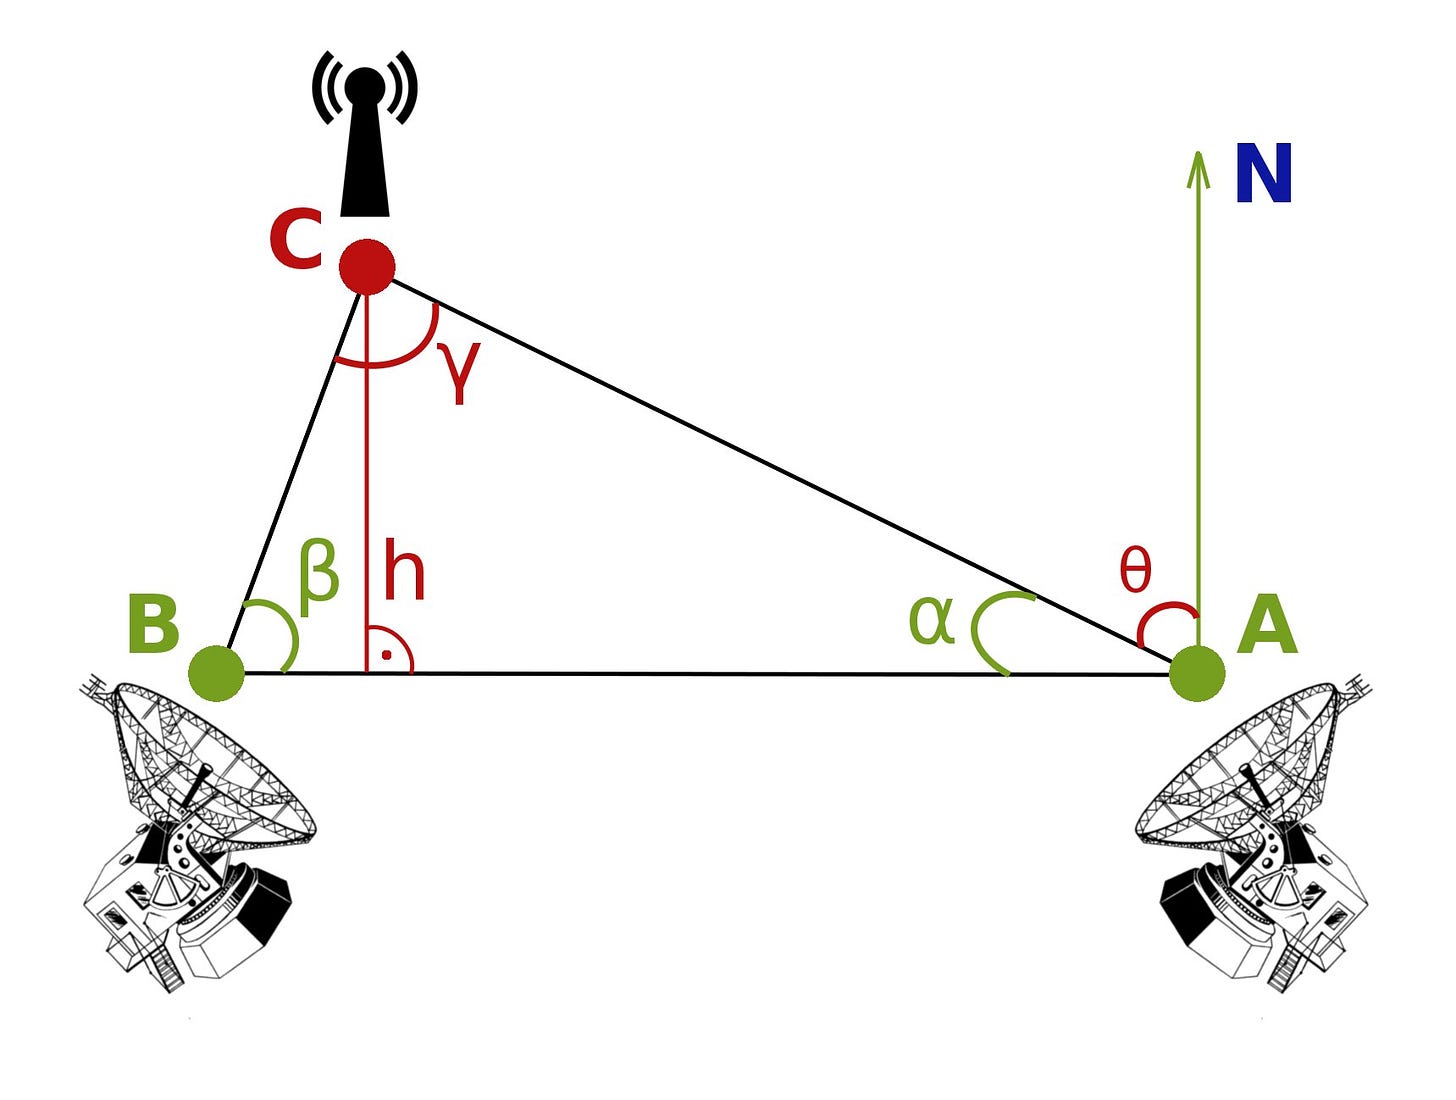 File:Radiotriangulation.jpg - Wikimedia Commons